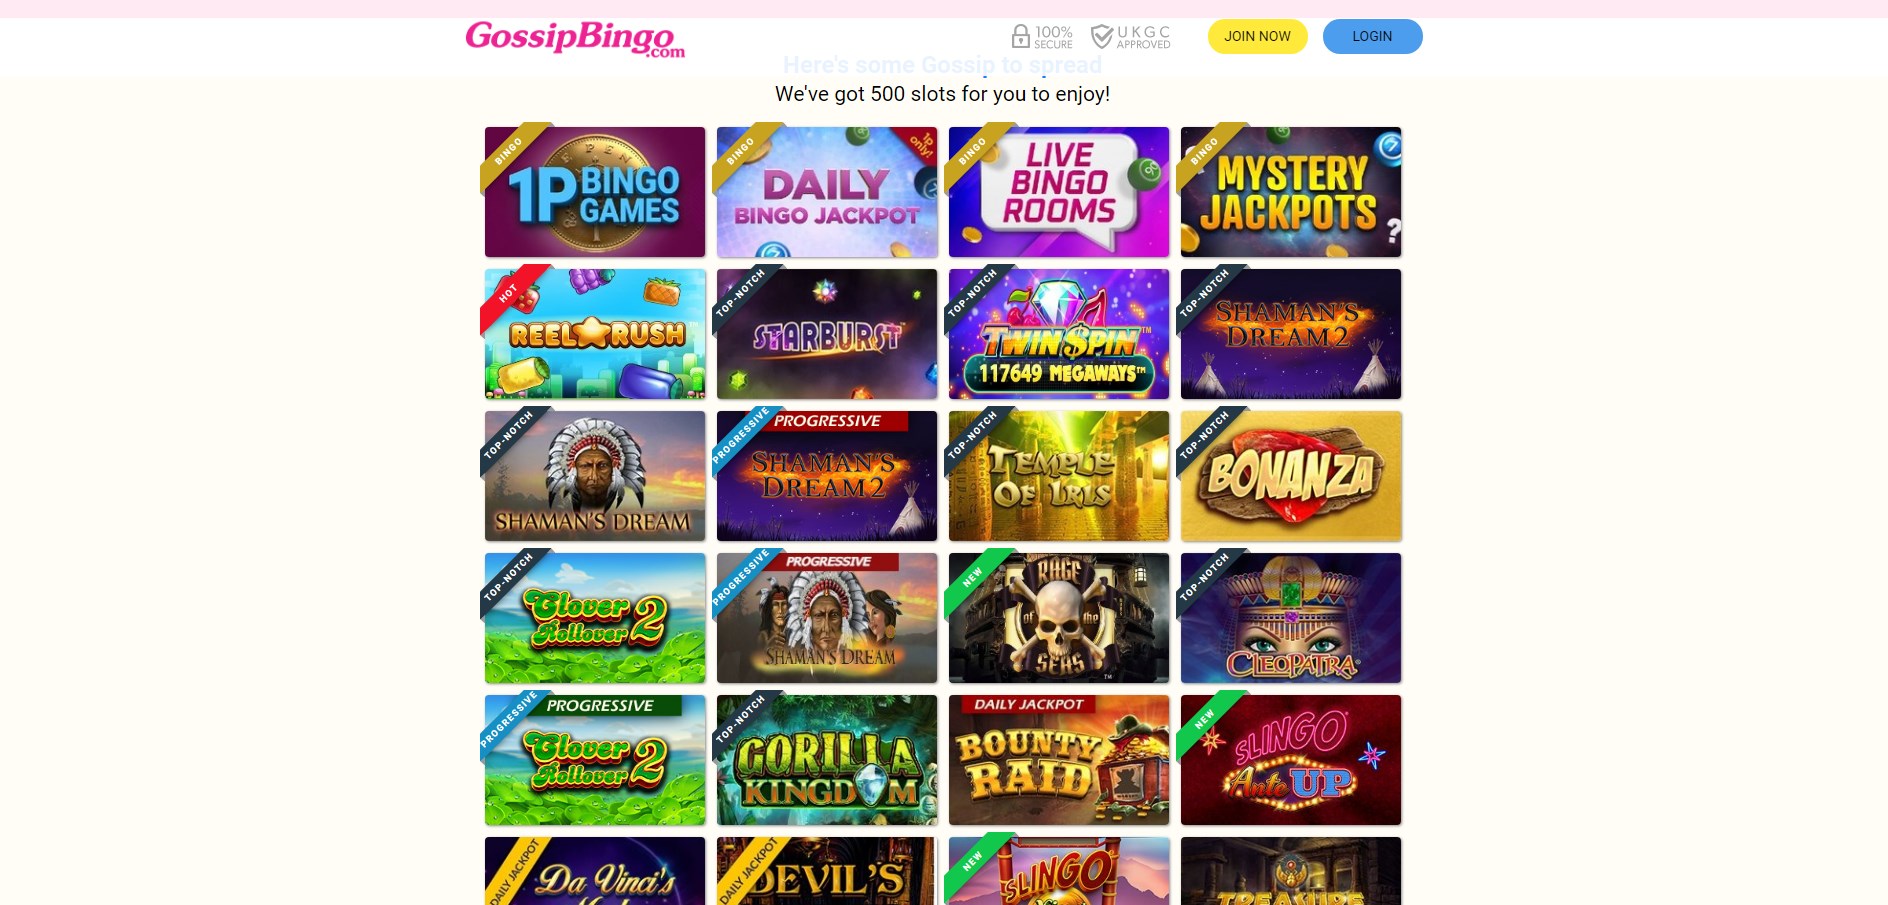 Gossip Bingo Casino Games